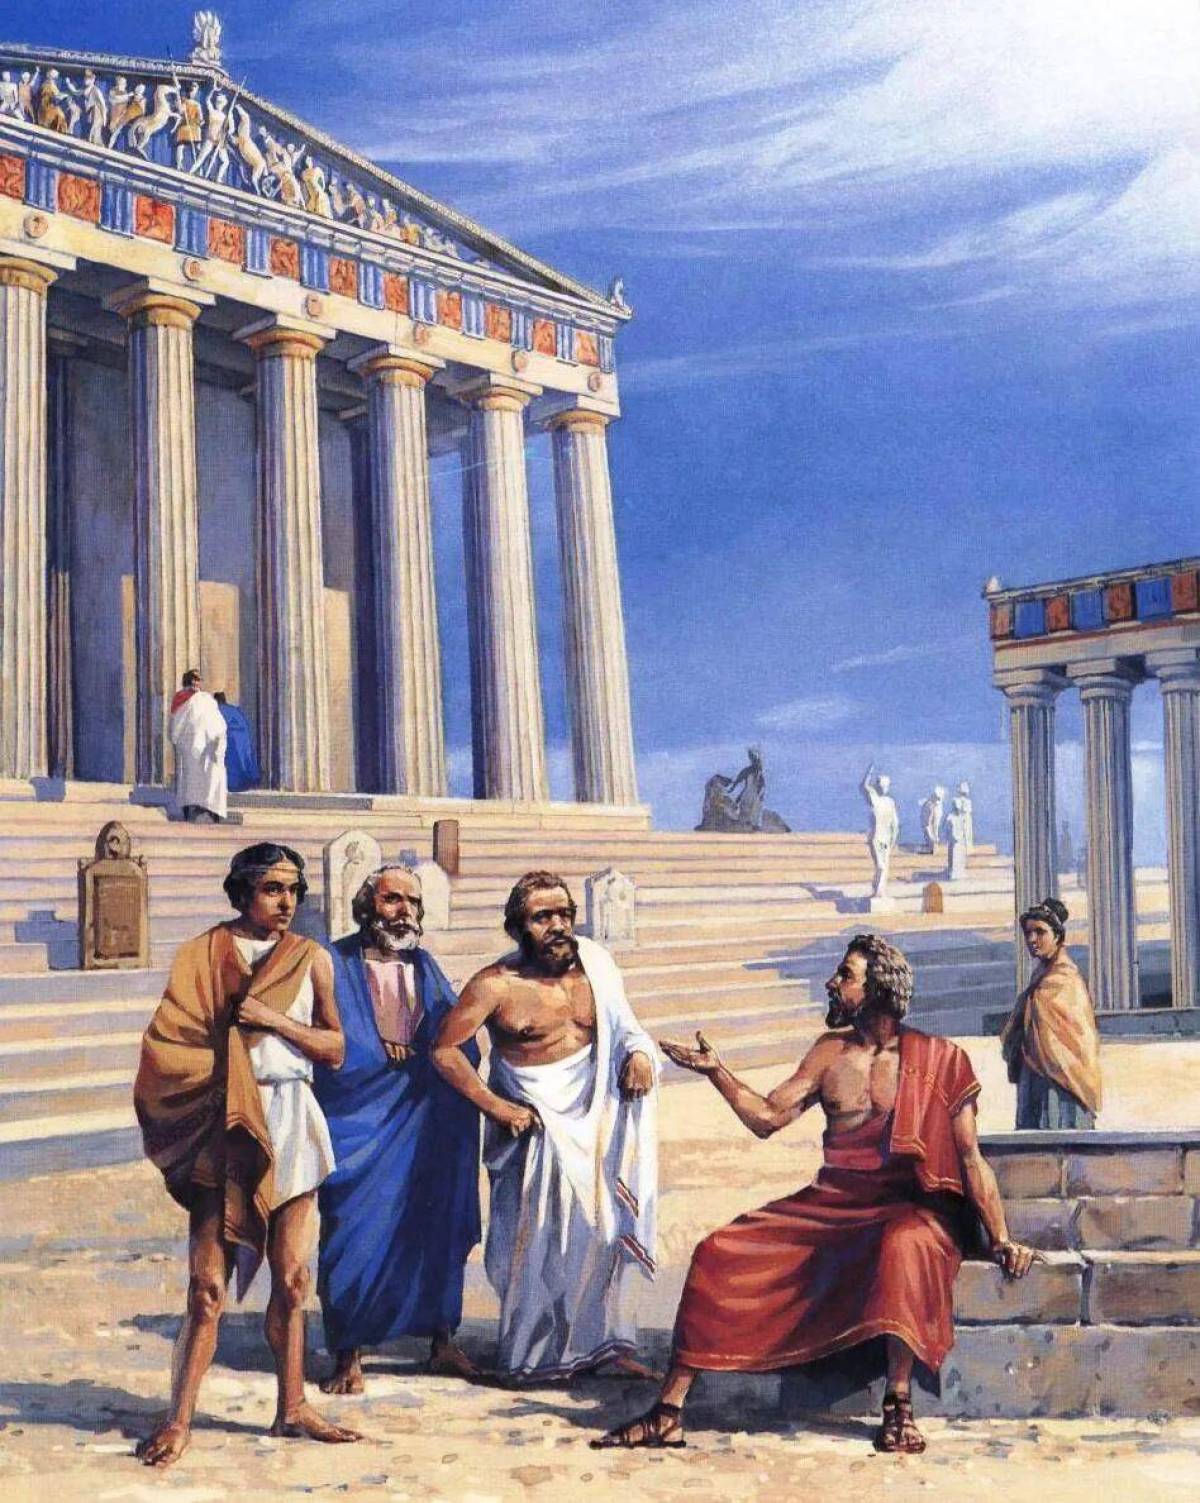 Древняя греция история главное